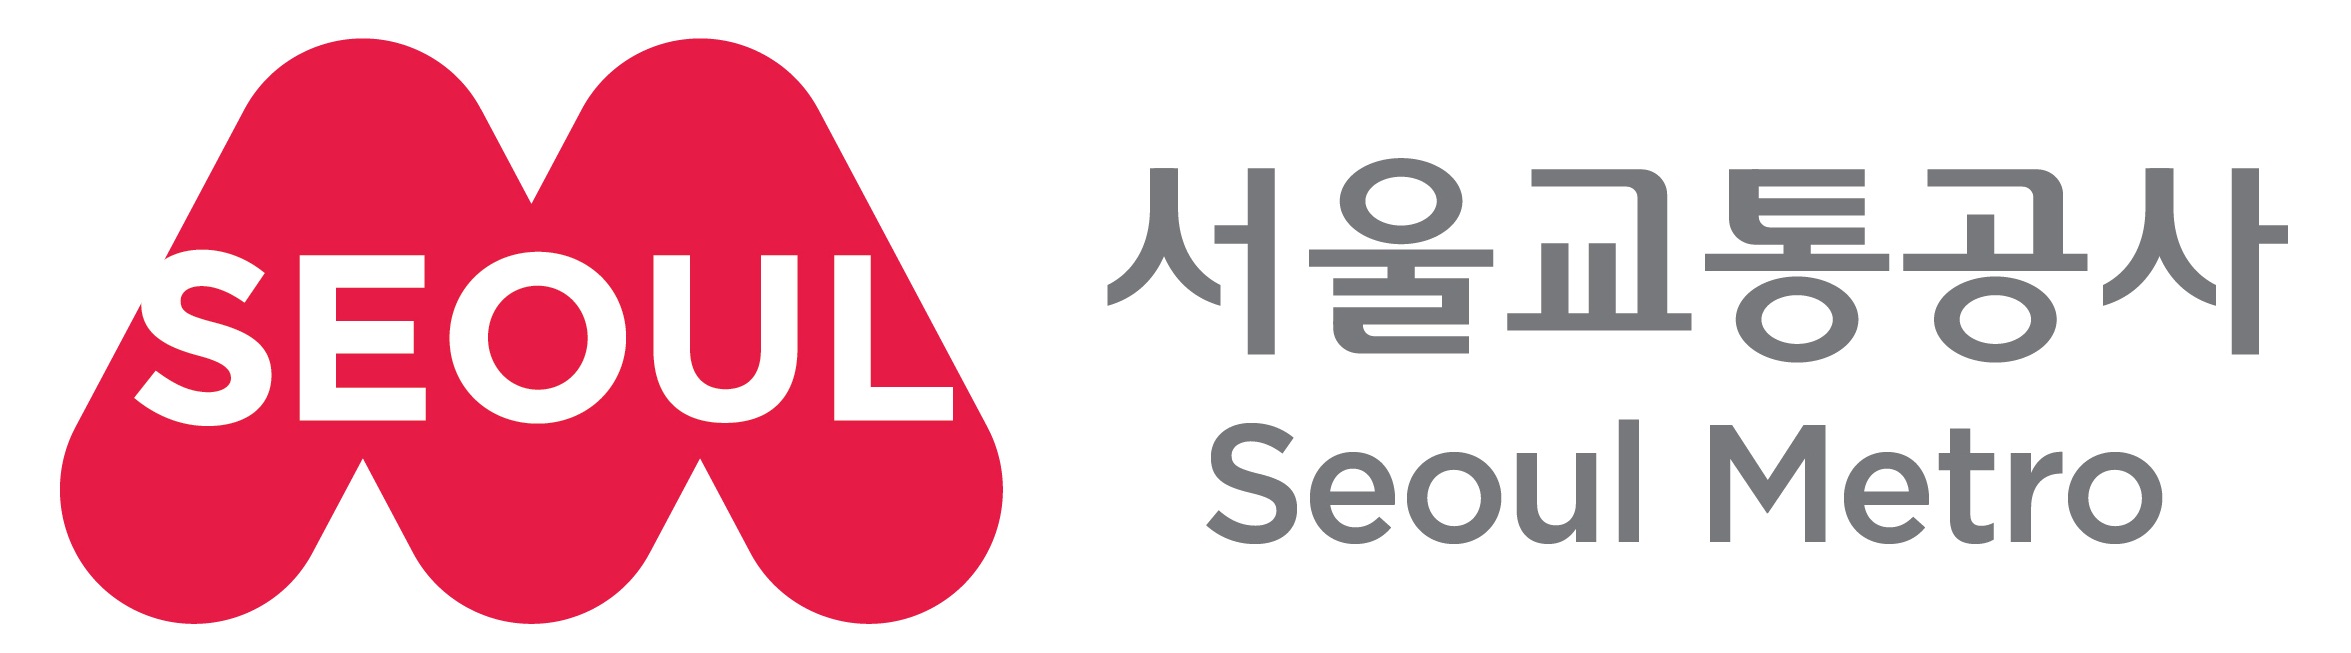 서울의 'ㅅ'이 겹쳐진 이미지로 M(Metro 의미)을 표현하여 시민의 미소를 나르는 서울교통공사 이미지를 구축